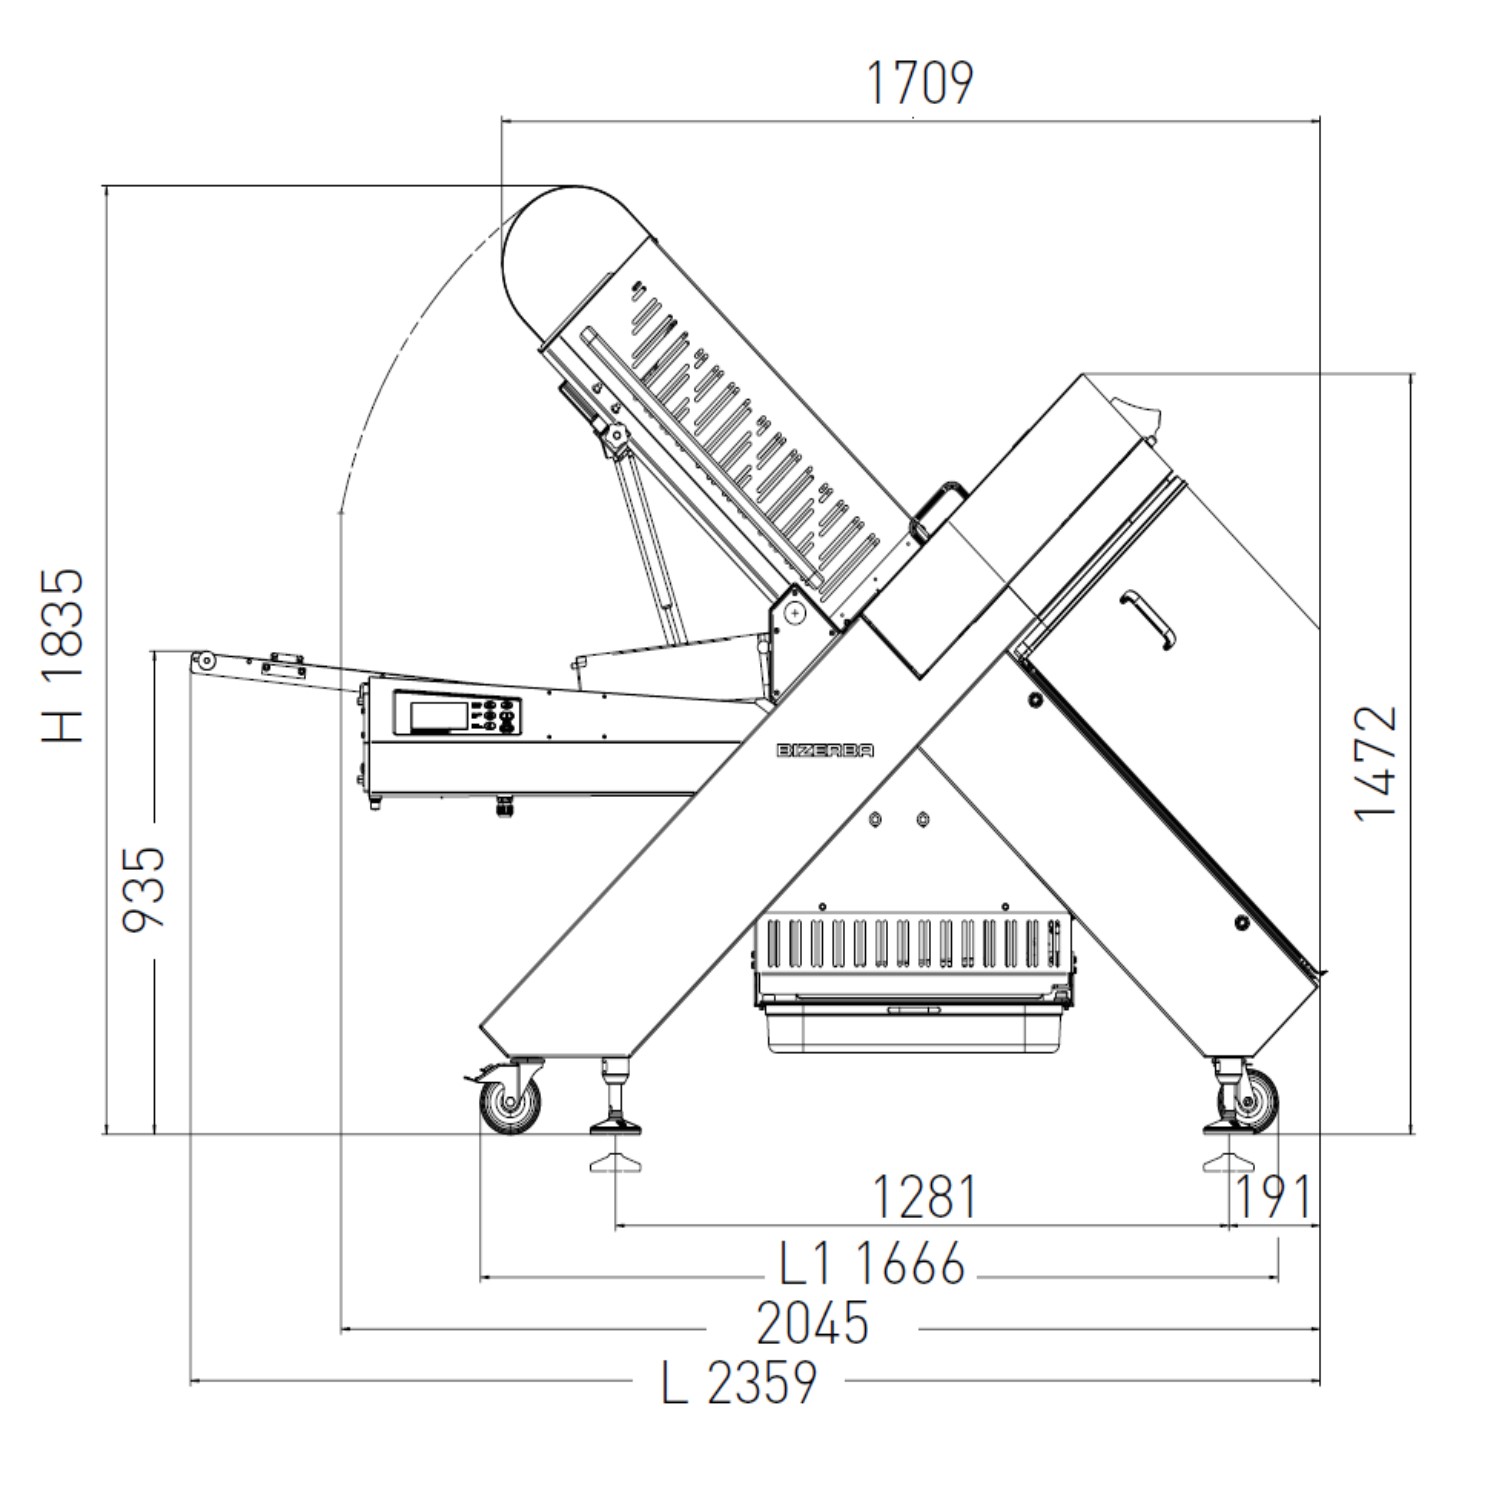 Bizerba A 560 Otomatik Dilimleme Makinası -5.jpg (185 KB)